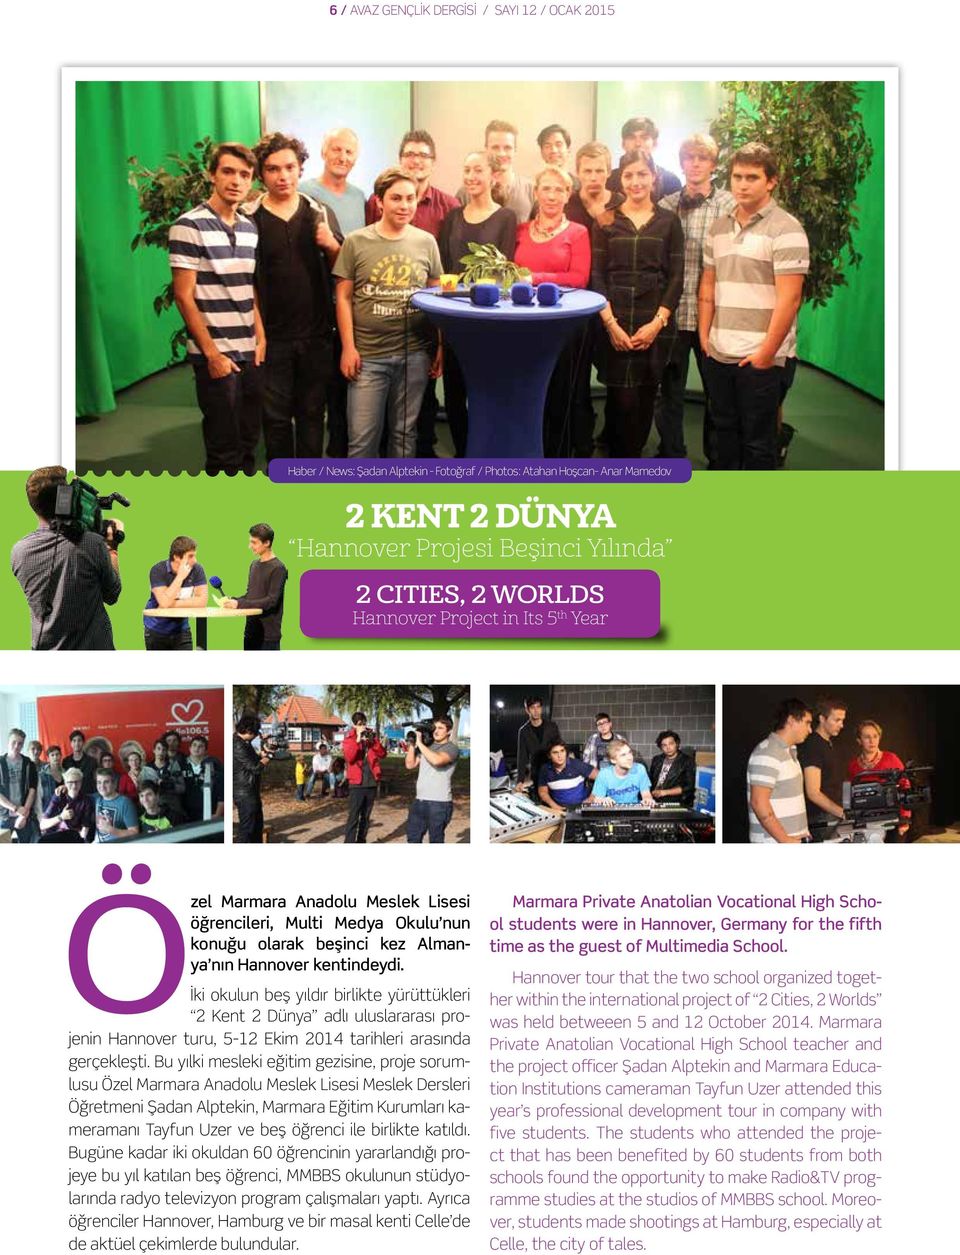 İki okulun beş yıldır birlikte yürüttükleri 2 Kent 2 Dünya adlı uluslararası projenin Hannover turu, 5-12 Ekim 2014 tarihleri arasında gerçekleşti.